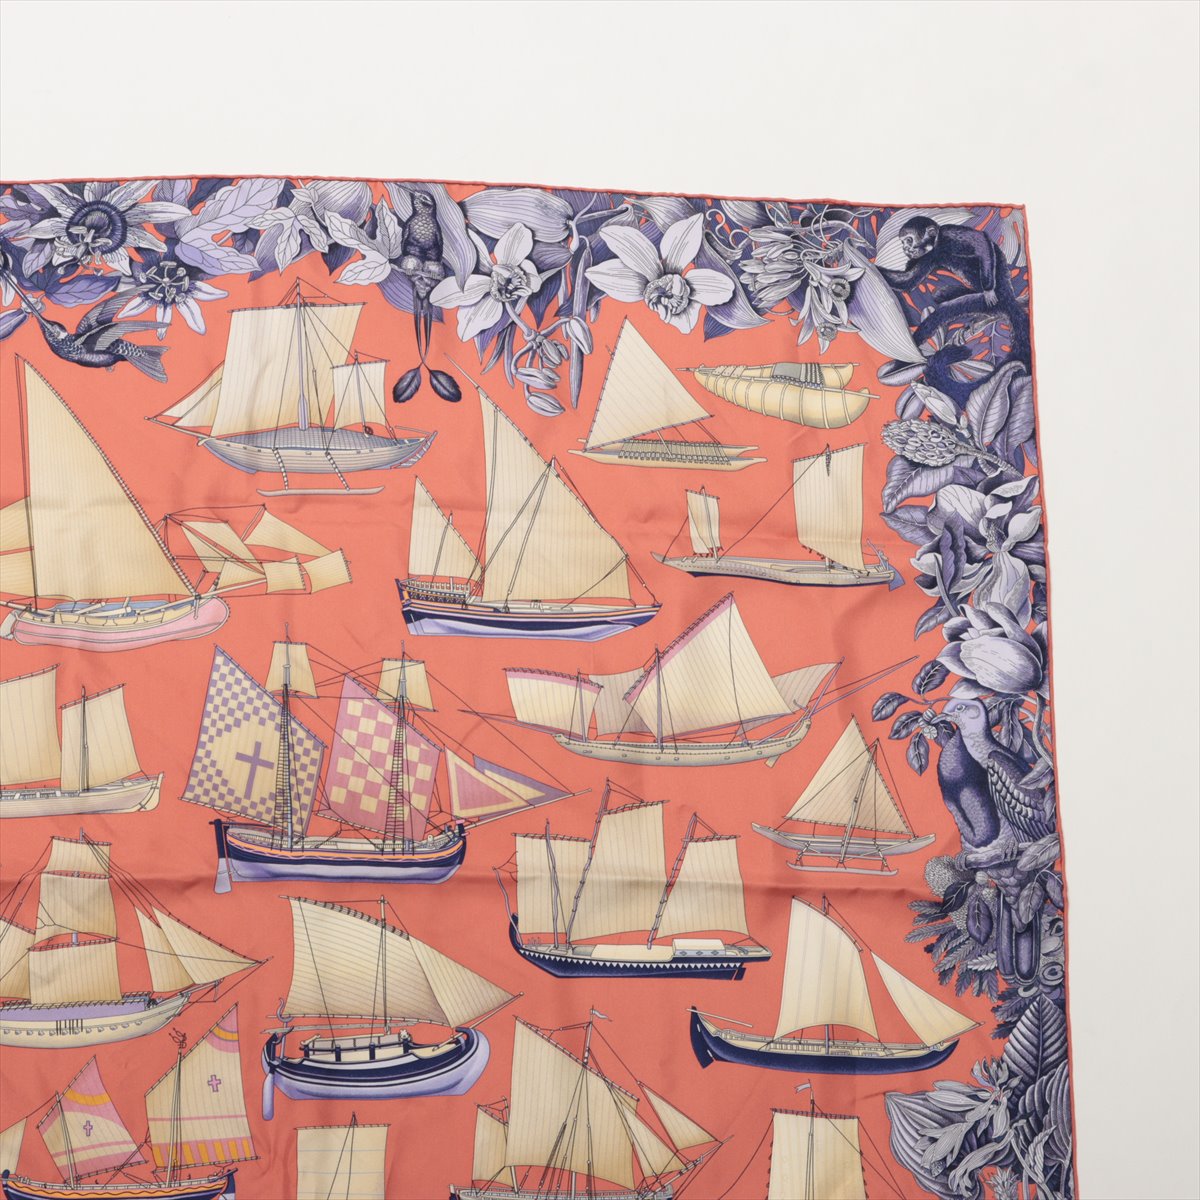 エルメス カレ90 Tous Les Bateaux du Monde 世界の帆船 スカーフ シルク ピンク